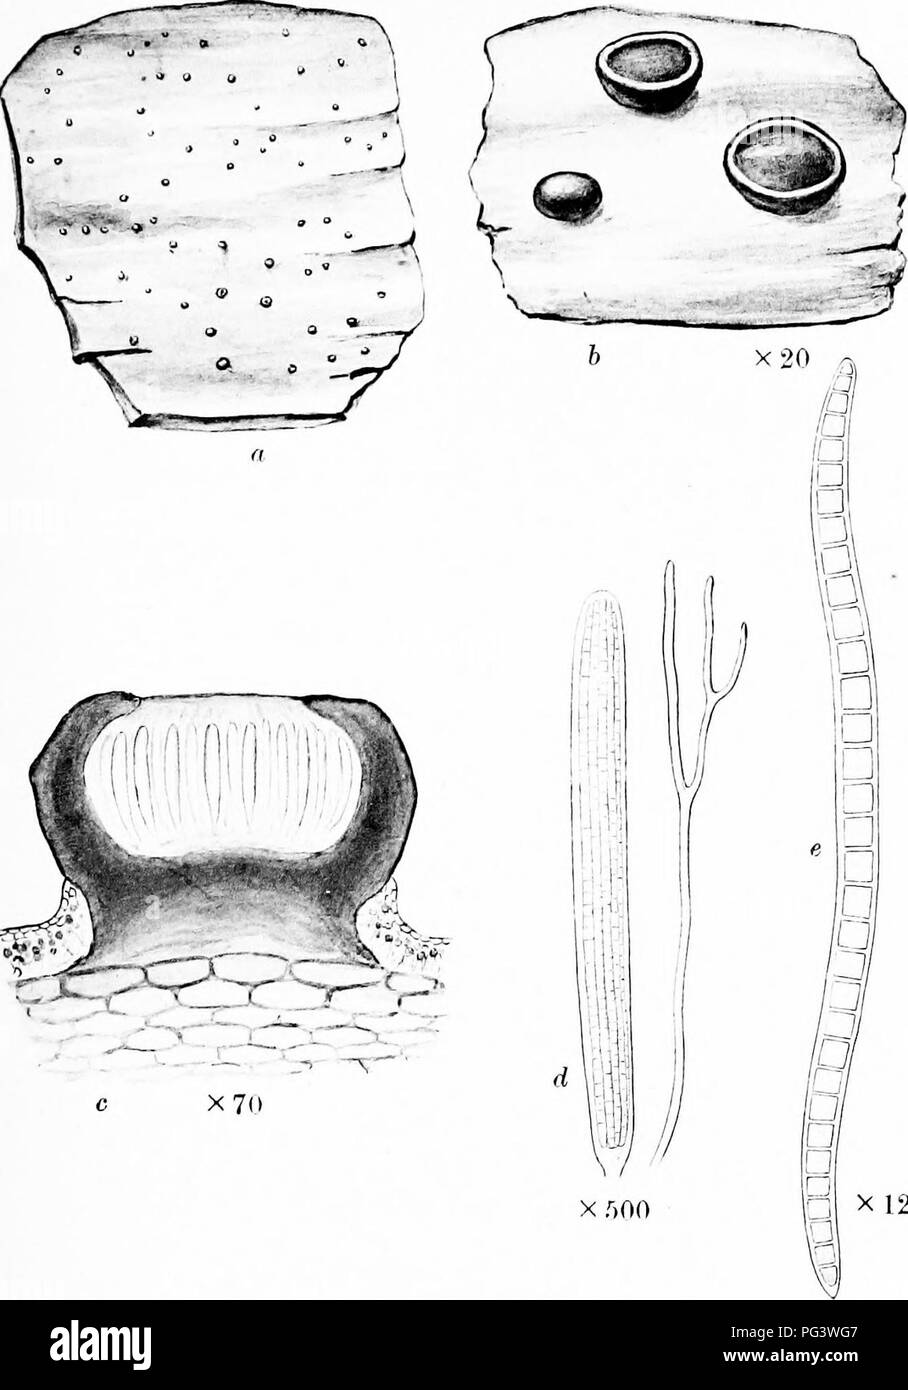 . Una monografia di licheni trovato in Gran Bretagna; essendo un catalogo descrittivo della specie nell'erbario del British Museum. I licheni. La piastra 1. X 1200 GONOTREMA URCEOT^ATUM Tiu-korm. n. Impianto su liark, 'i. Porzione di thallns e apotlieeia. c. Sezione verticale di apotbecium. d, Aschi paraphysis e. e. Singola spora.. Si prega di notare che queste immagini vengono estratte dalla pagina sottoposta a scansione di immagini che possono essere state migliorate digitalmente per la leggibilità - Colorazione e aspetto di queste illustrazioni potrebbero non perfettamente assomigliano al lavoro originale. British Museum (storia naturale). Dipartimento di Botanica; Crombie Foto Stock